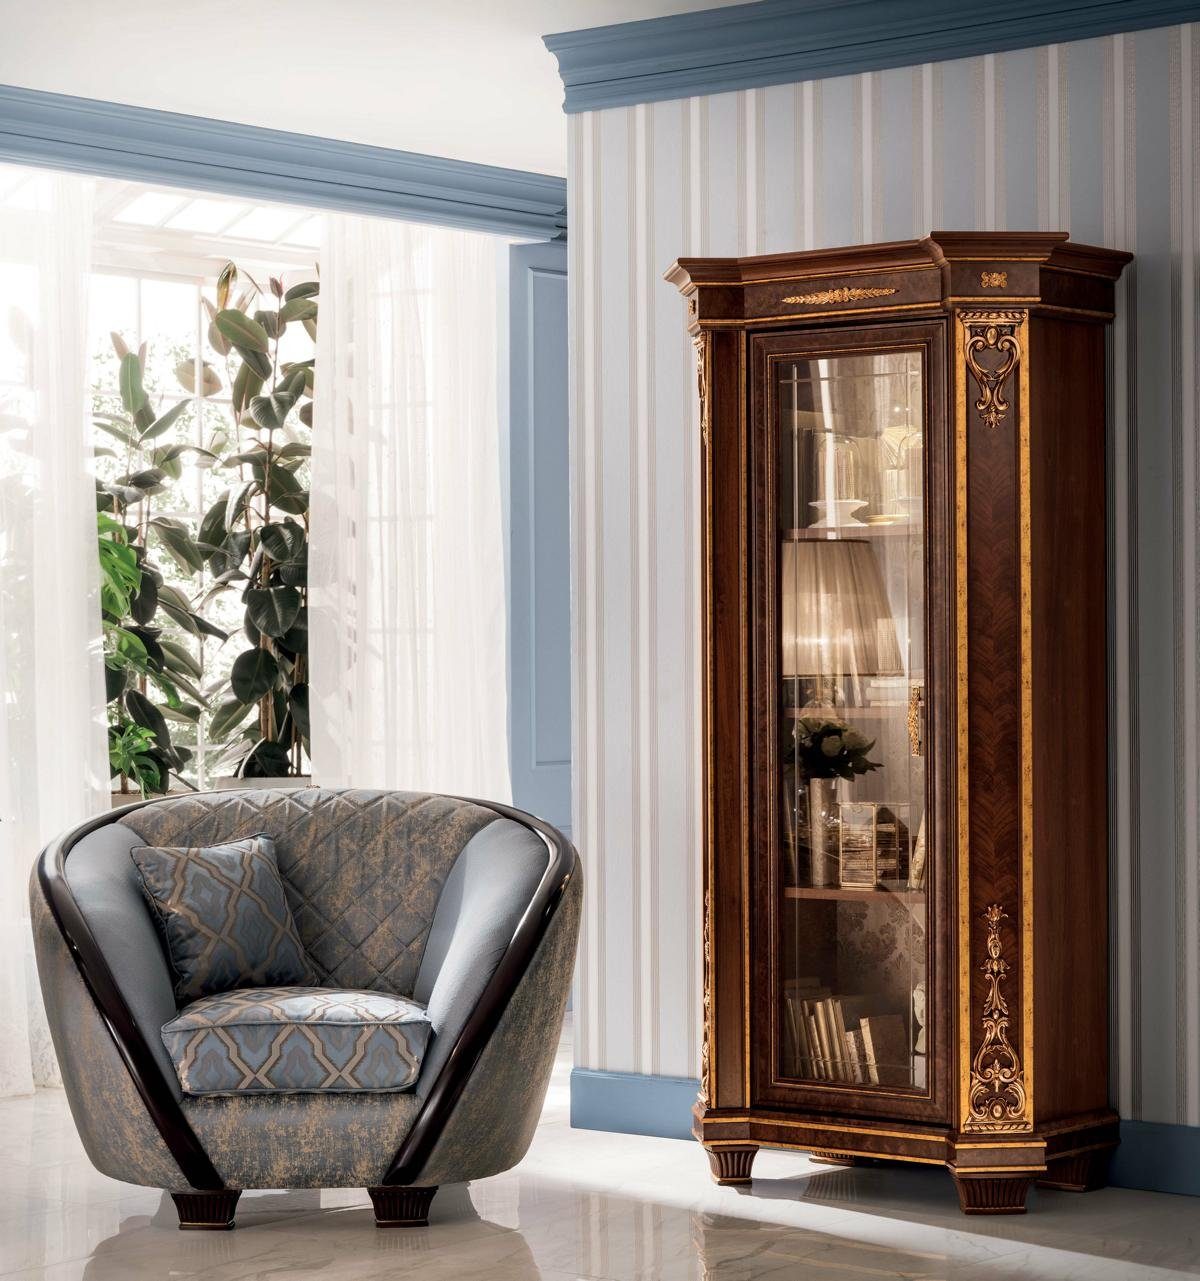 JVmoebel Italienische Möbel Neu Klasse arredoclassic™ 2+1 Couch Luxus Sofagarnitur Wohnzimmer-Set, Sofa